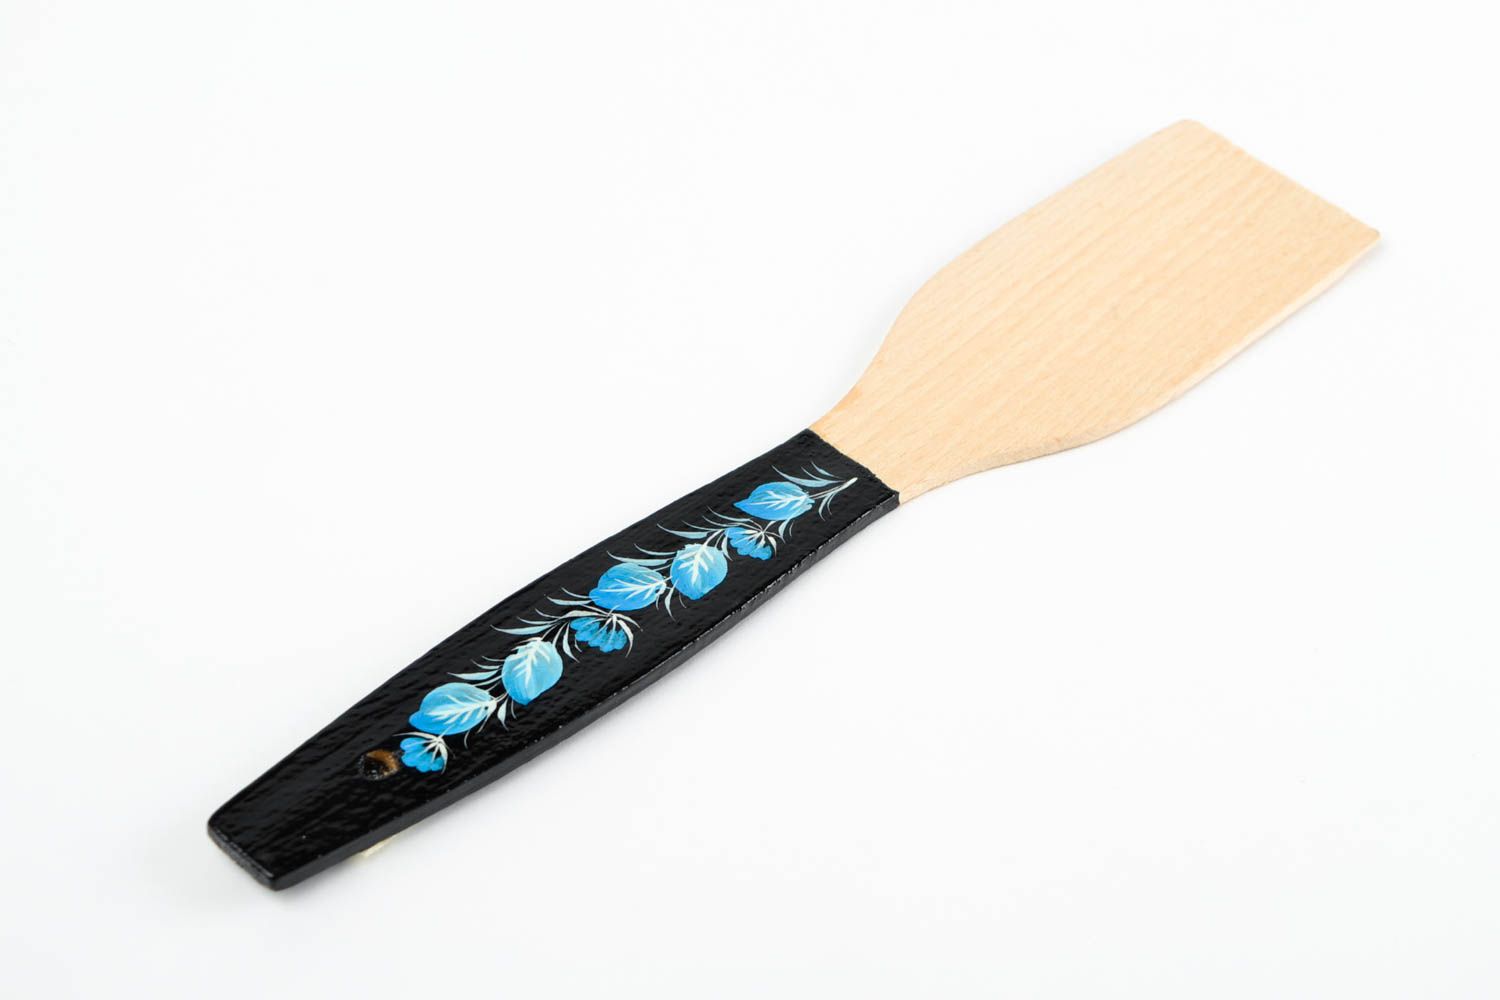 Handmade beautiful wooden spatula stylish kitchen utensil cute kitchen accessory photo 3